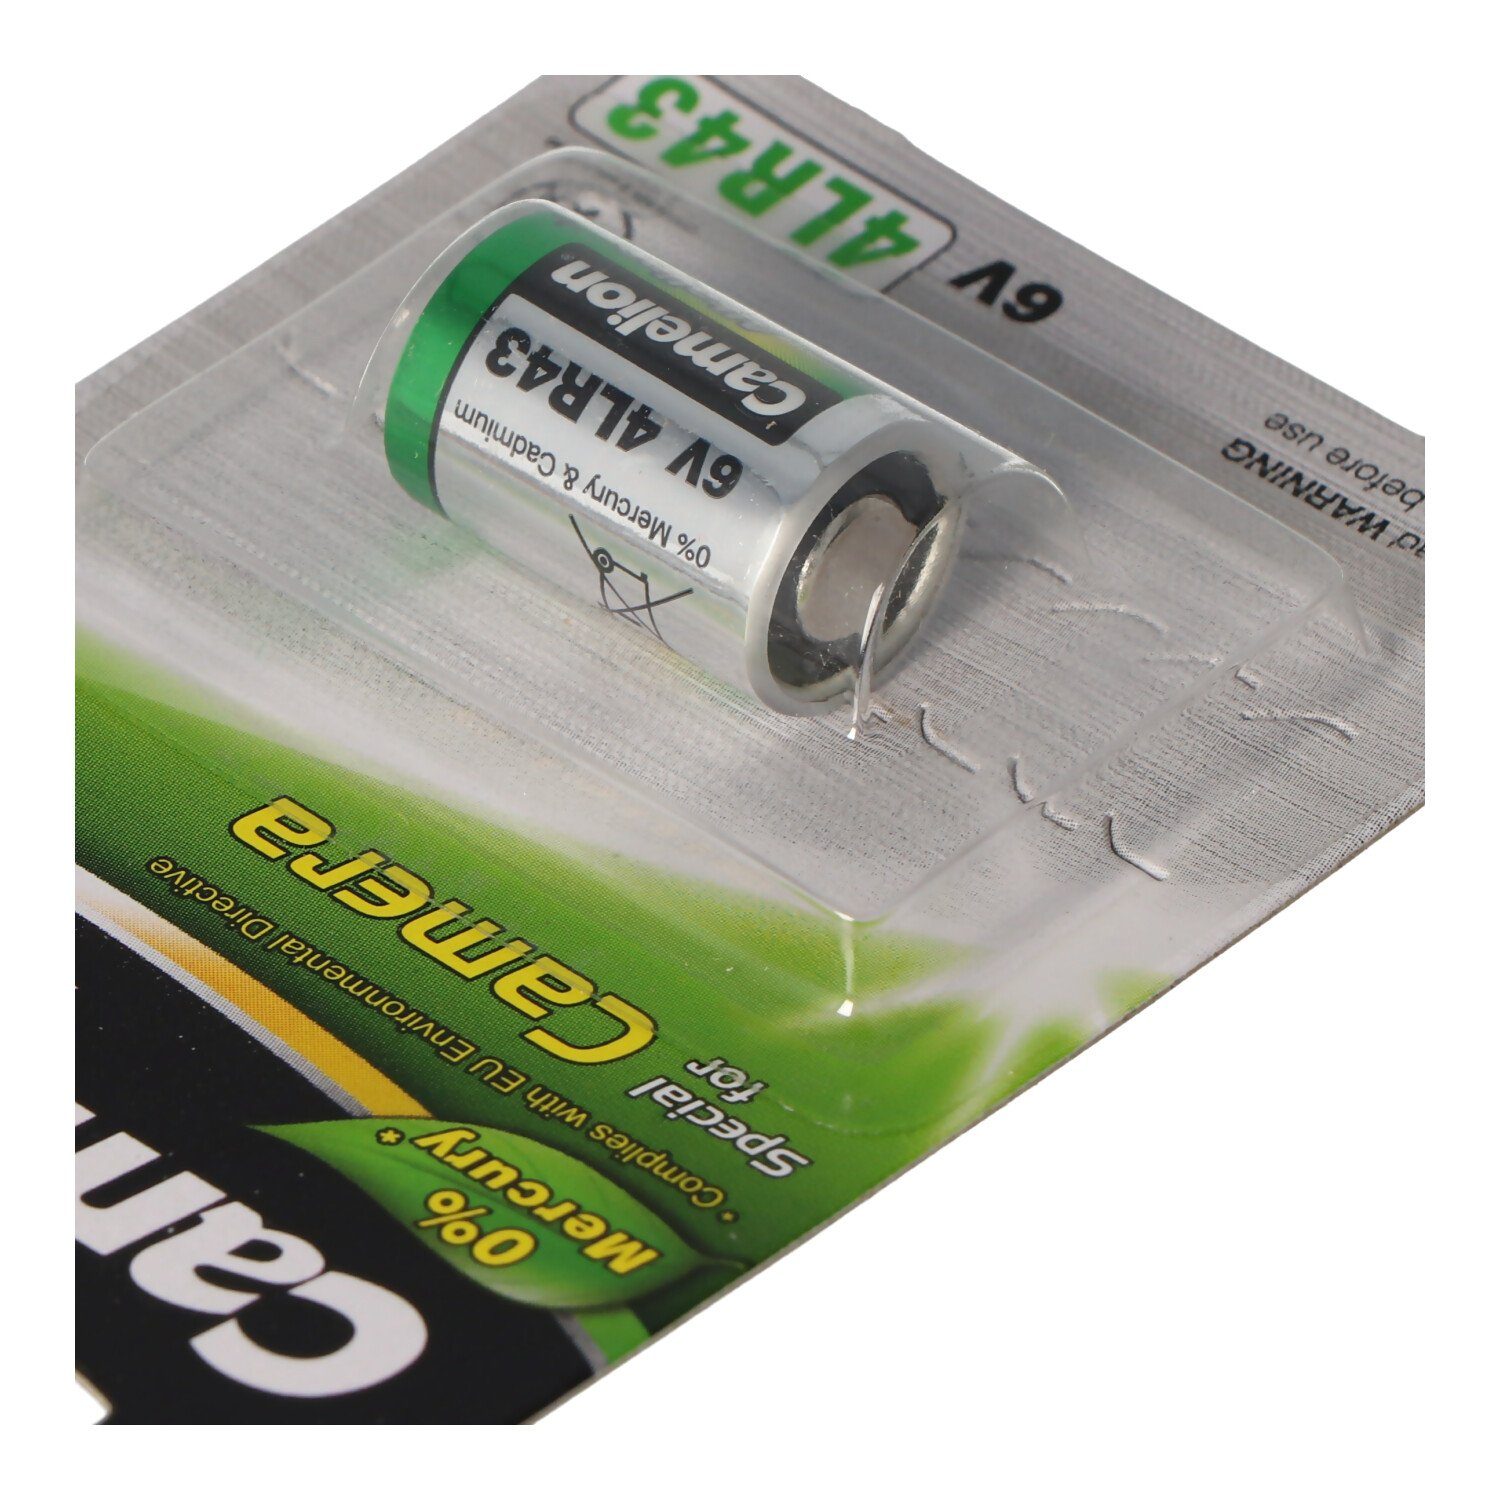 Camelion Alkaline Batterie, Photo 4LR43, x 12,7 4AG12, 4NR43, 6Volt Fotobatterie, (6,0 EPX27 PX27 V)